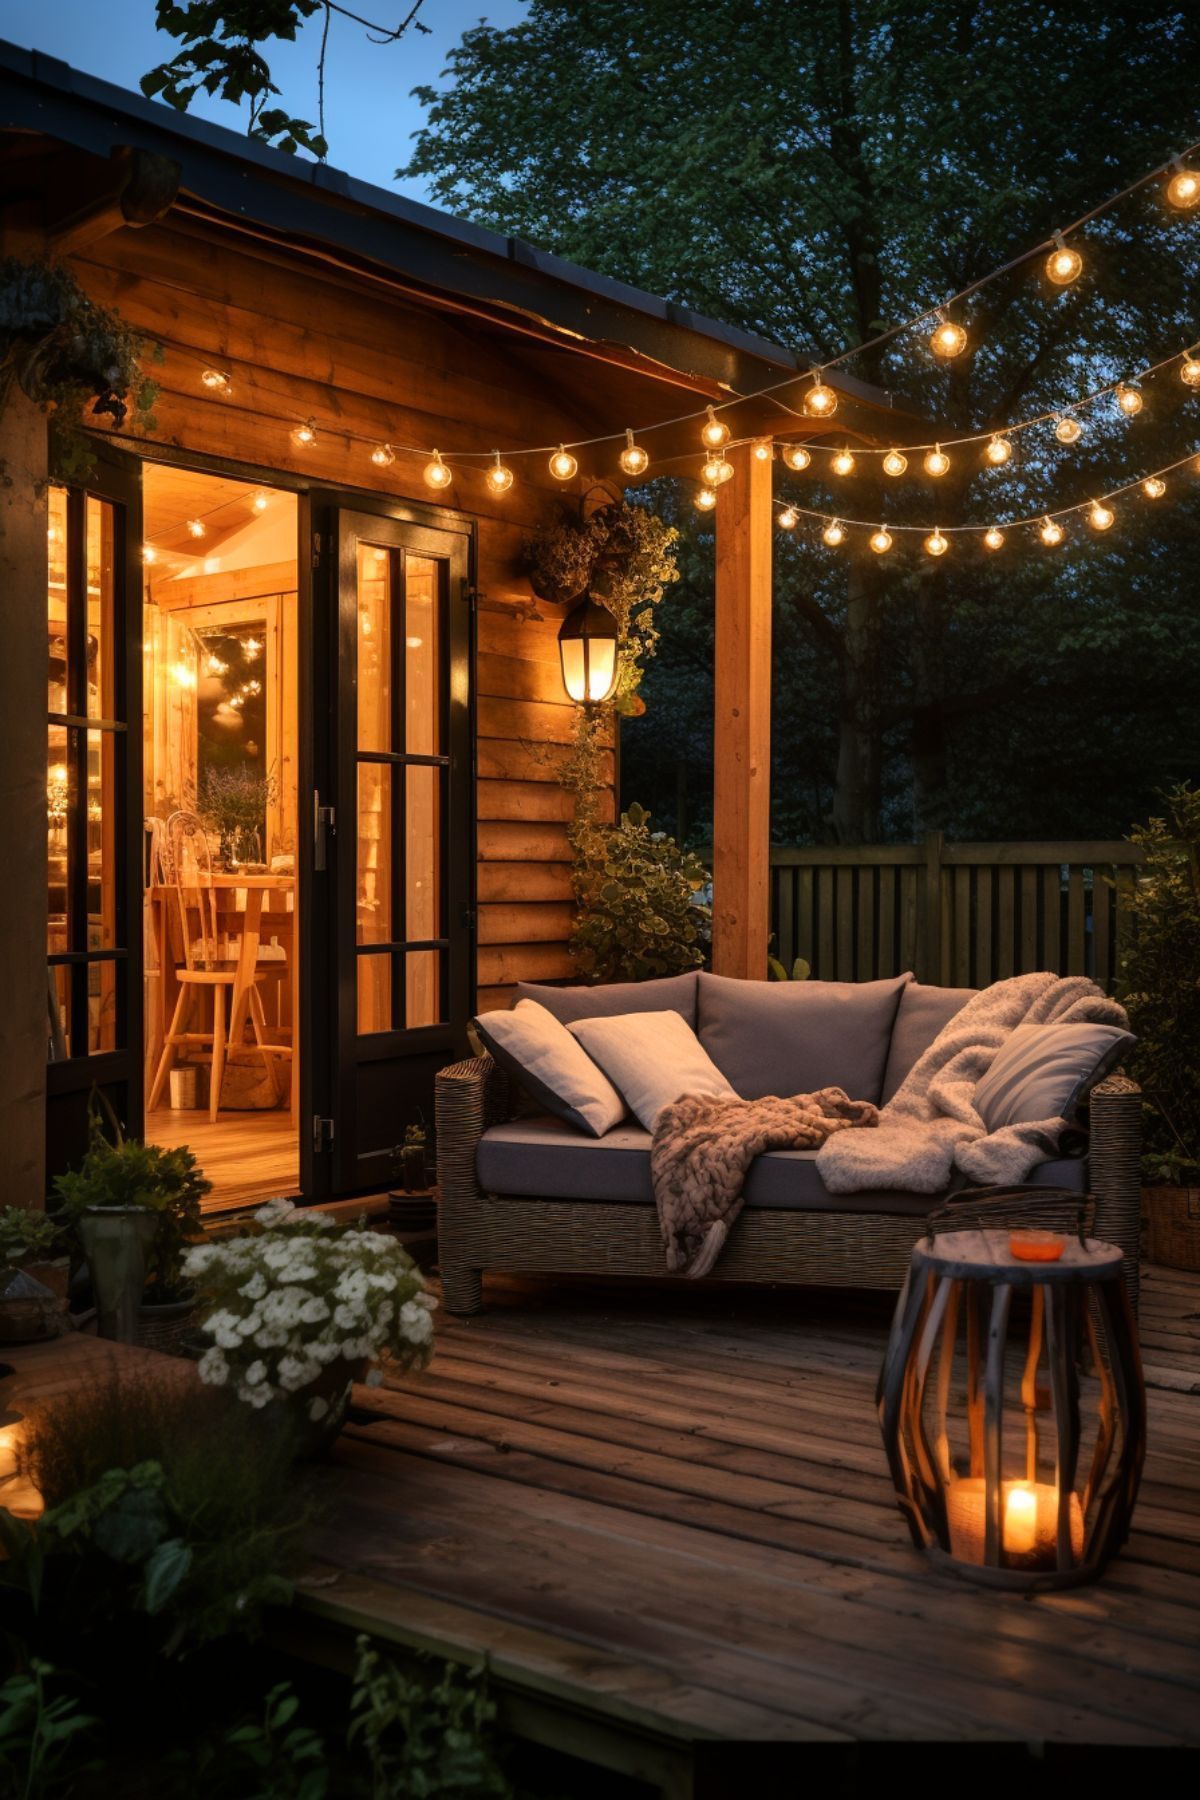 garden log cabins